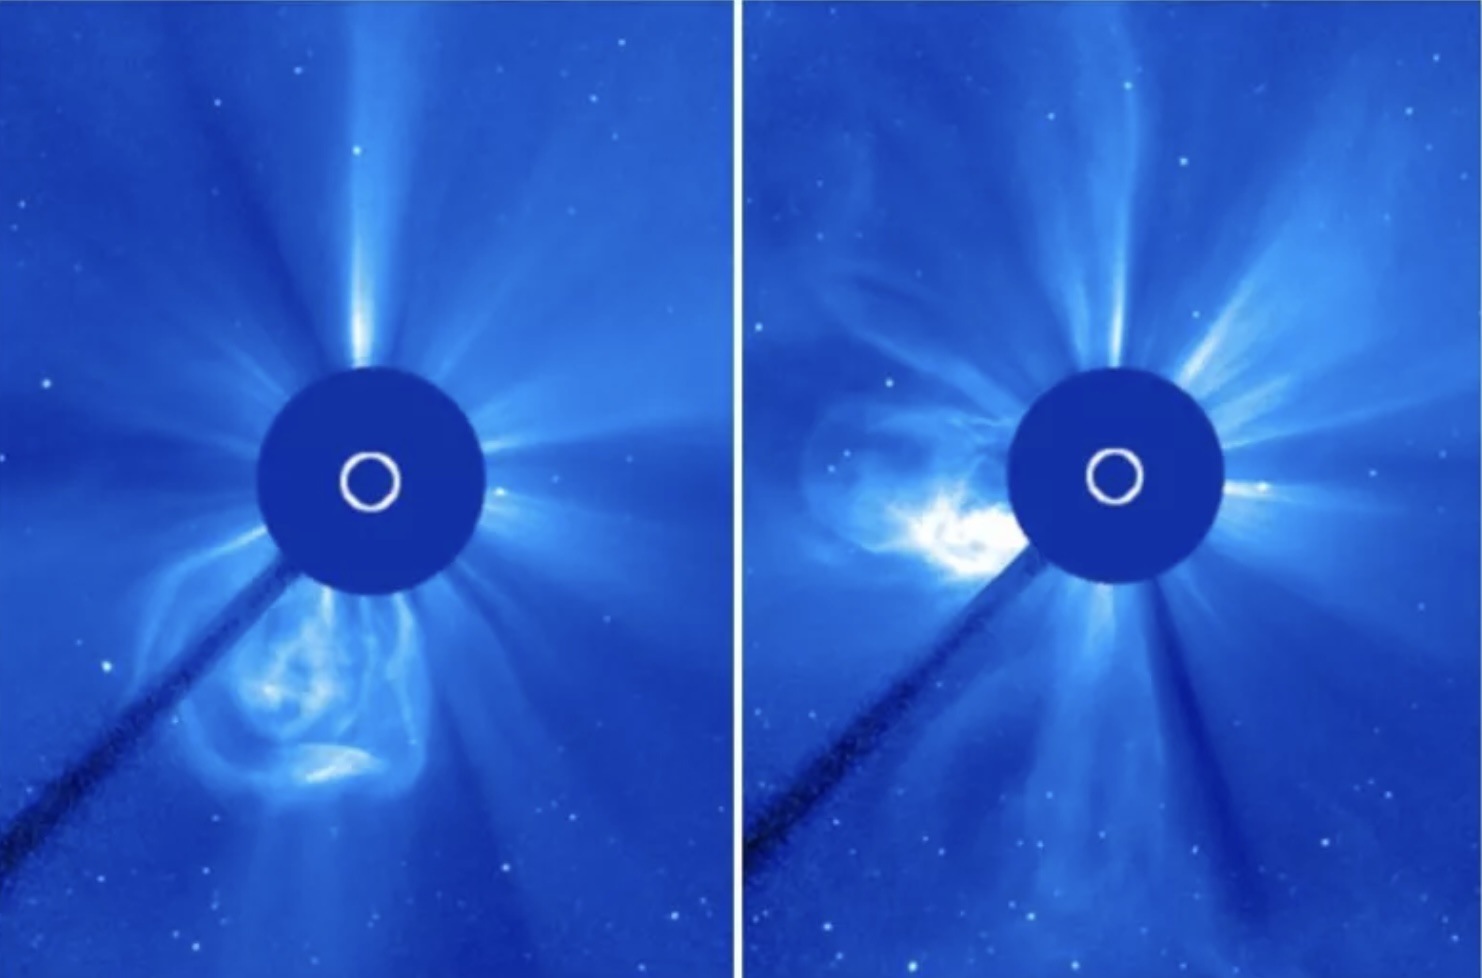 Mặt trời giải phóng CME vào ngày 22.11 (trái) và ngày 23.11 (phải). Một trong những CME gần đây của Mặt trời dự kiến tấn công Trái đất vào cuối ngày 25.11. Ảnh: NASA